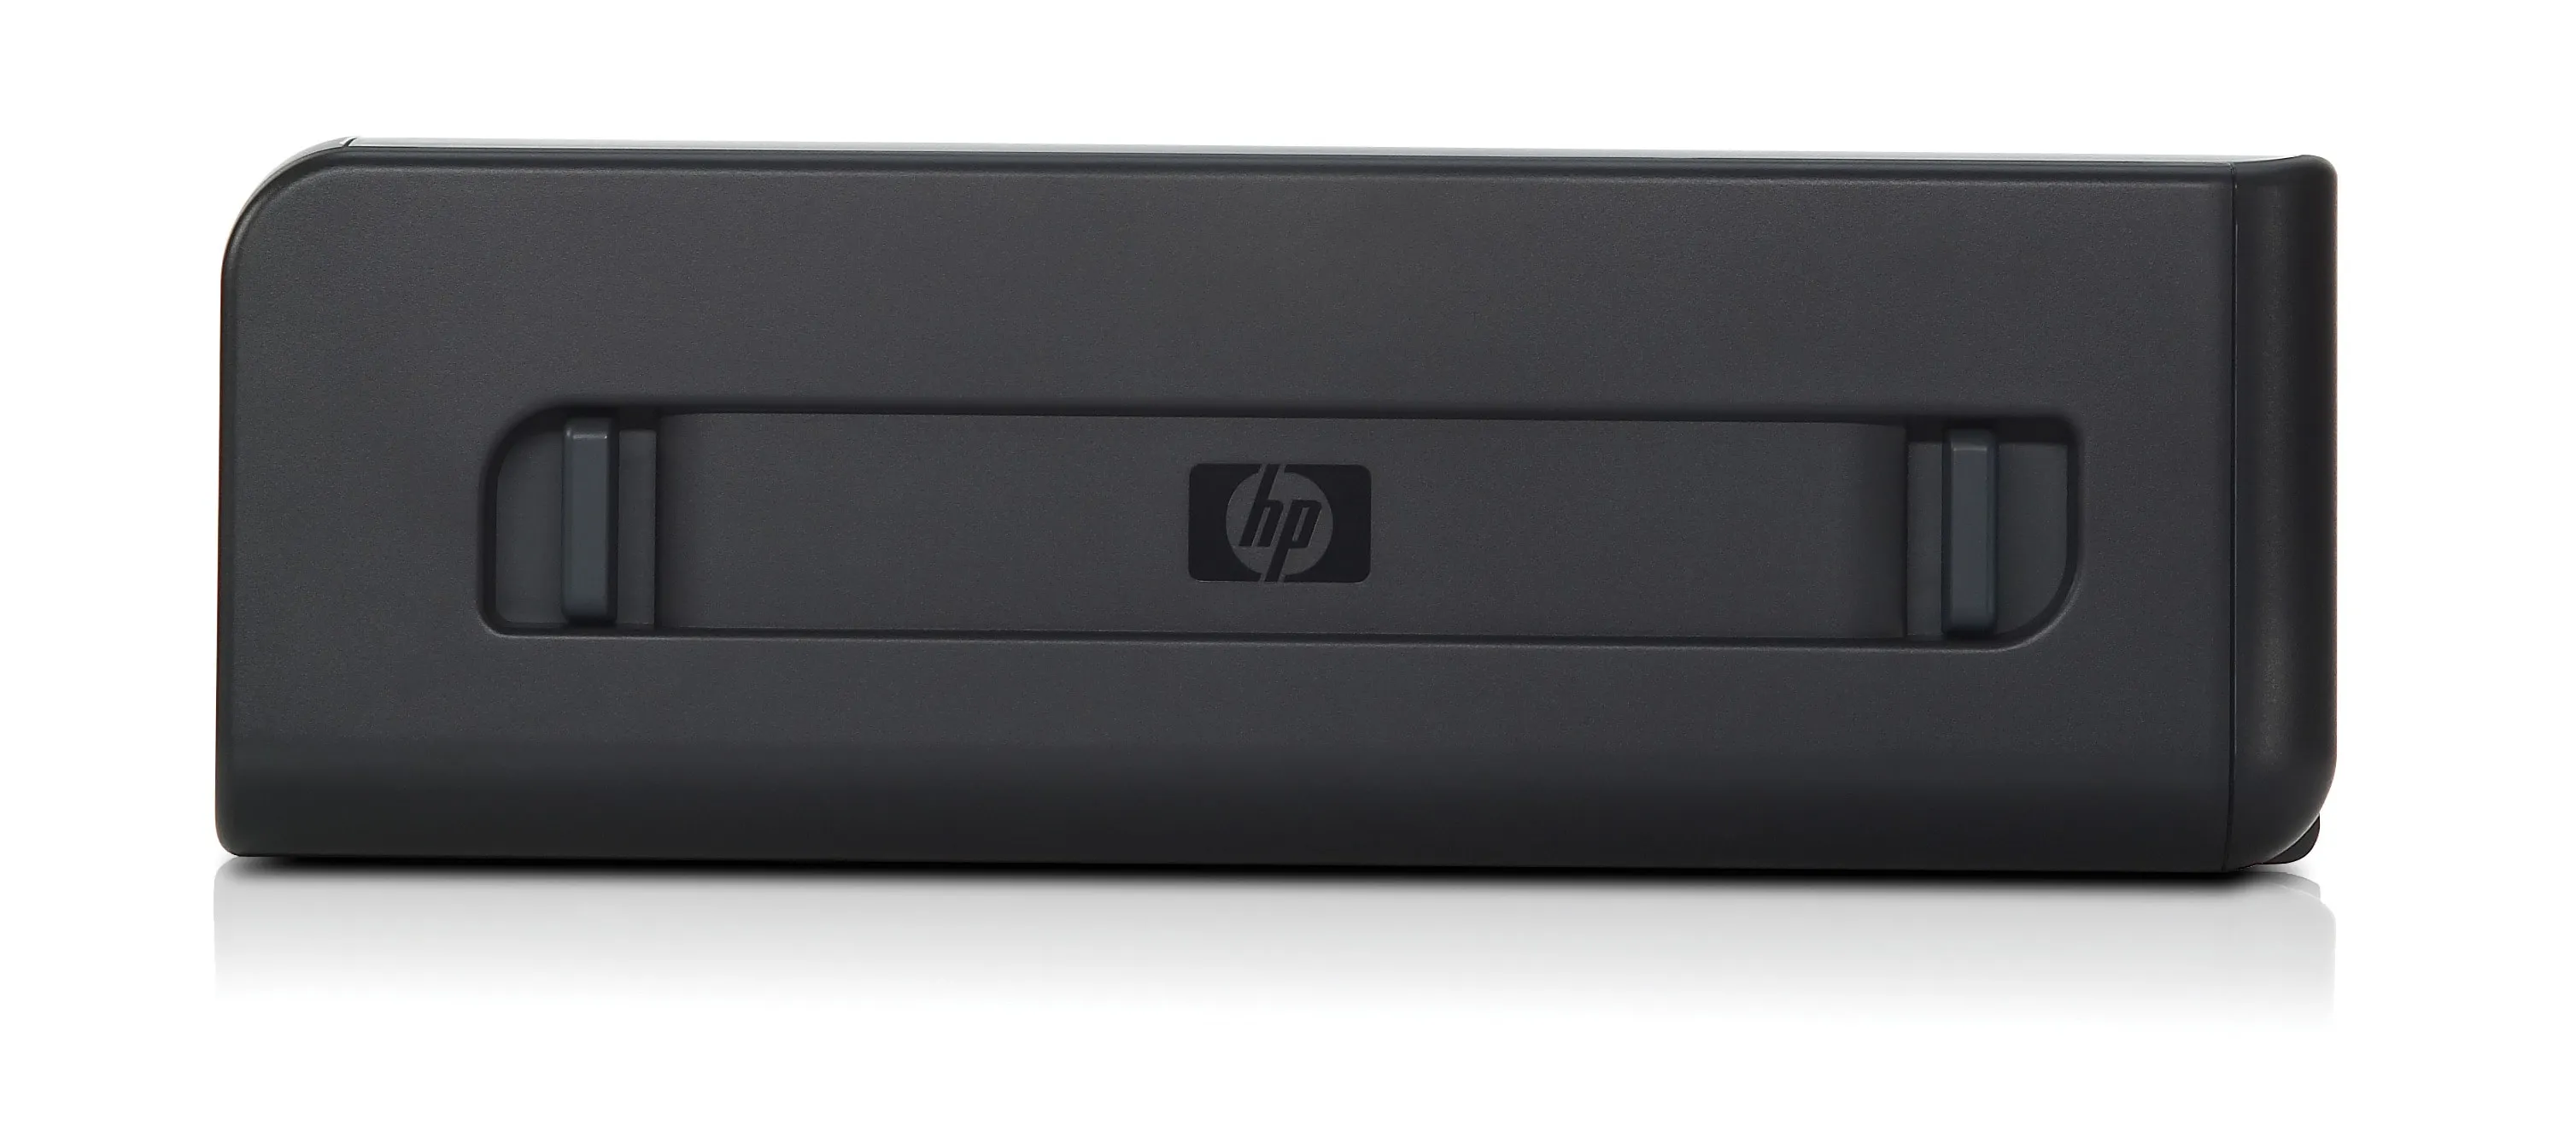 Vente HP Officejet Wide Format Duplexer HP au meilleur prix - visuel 4